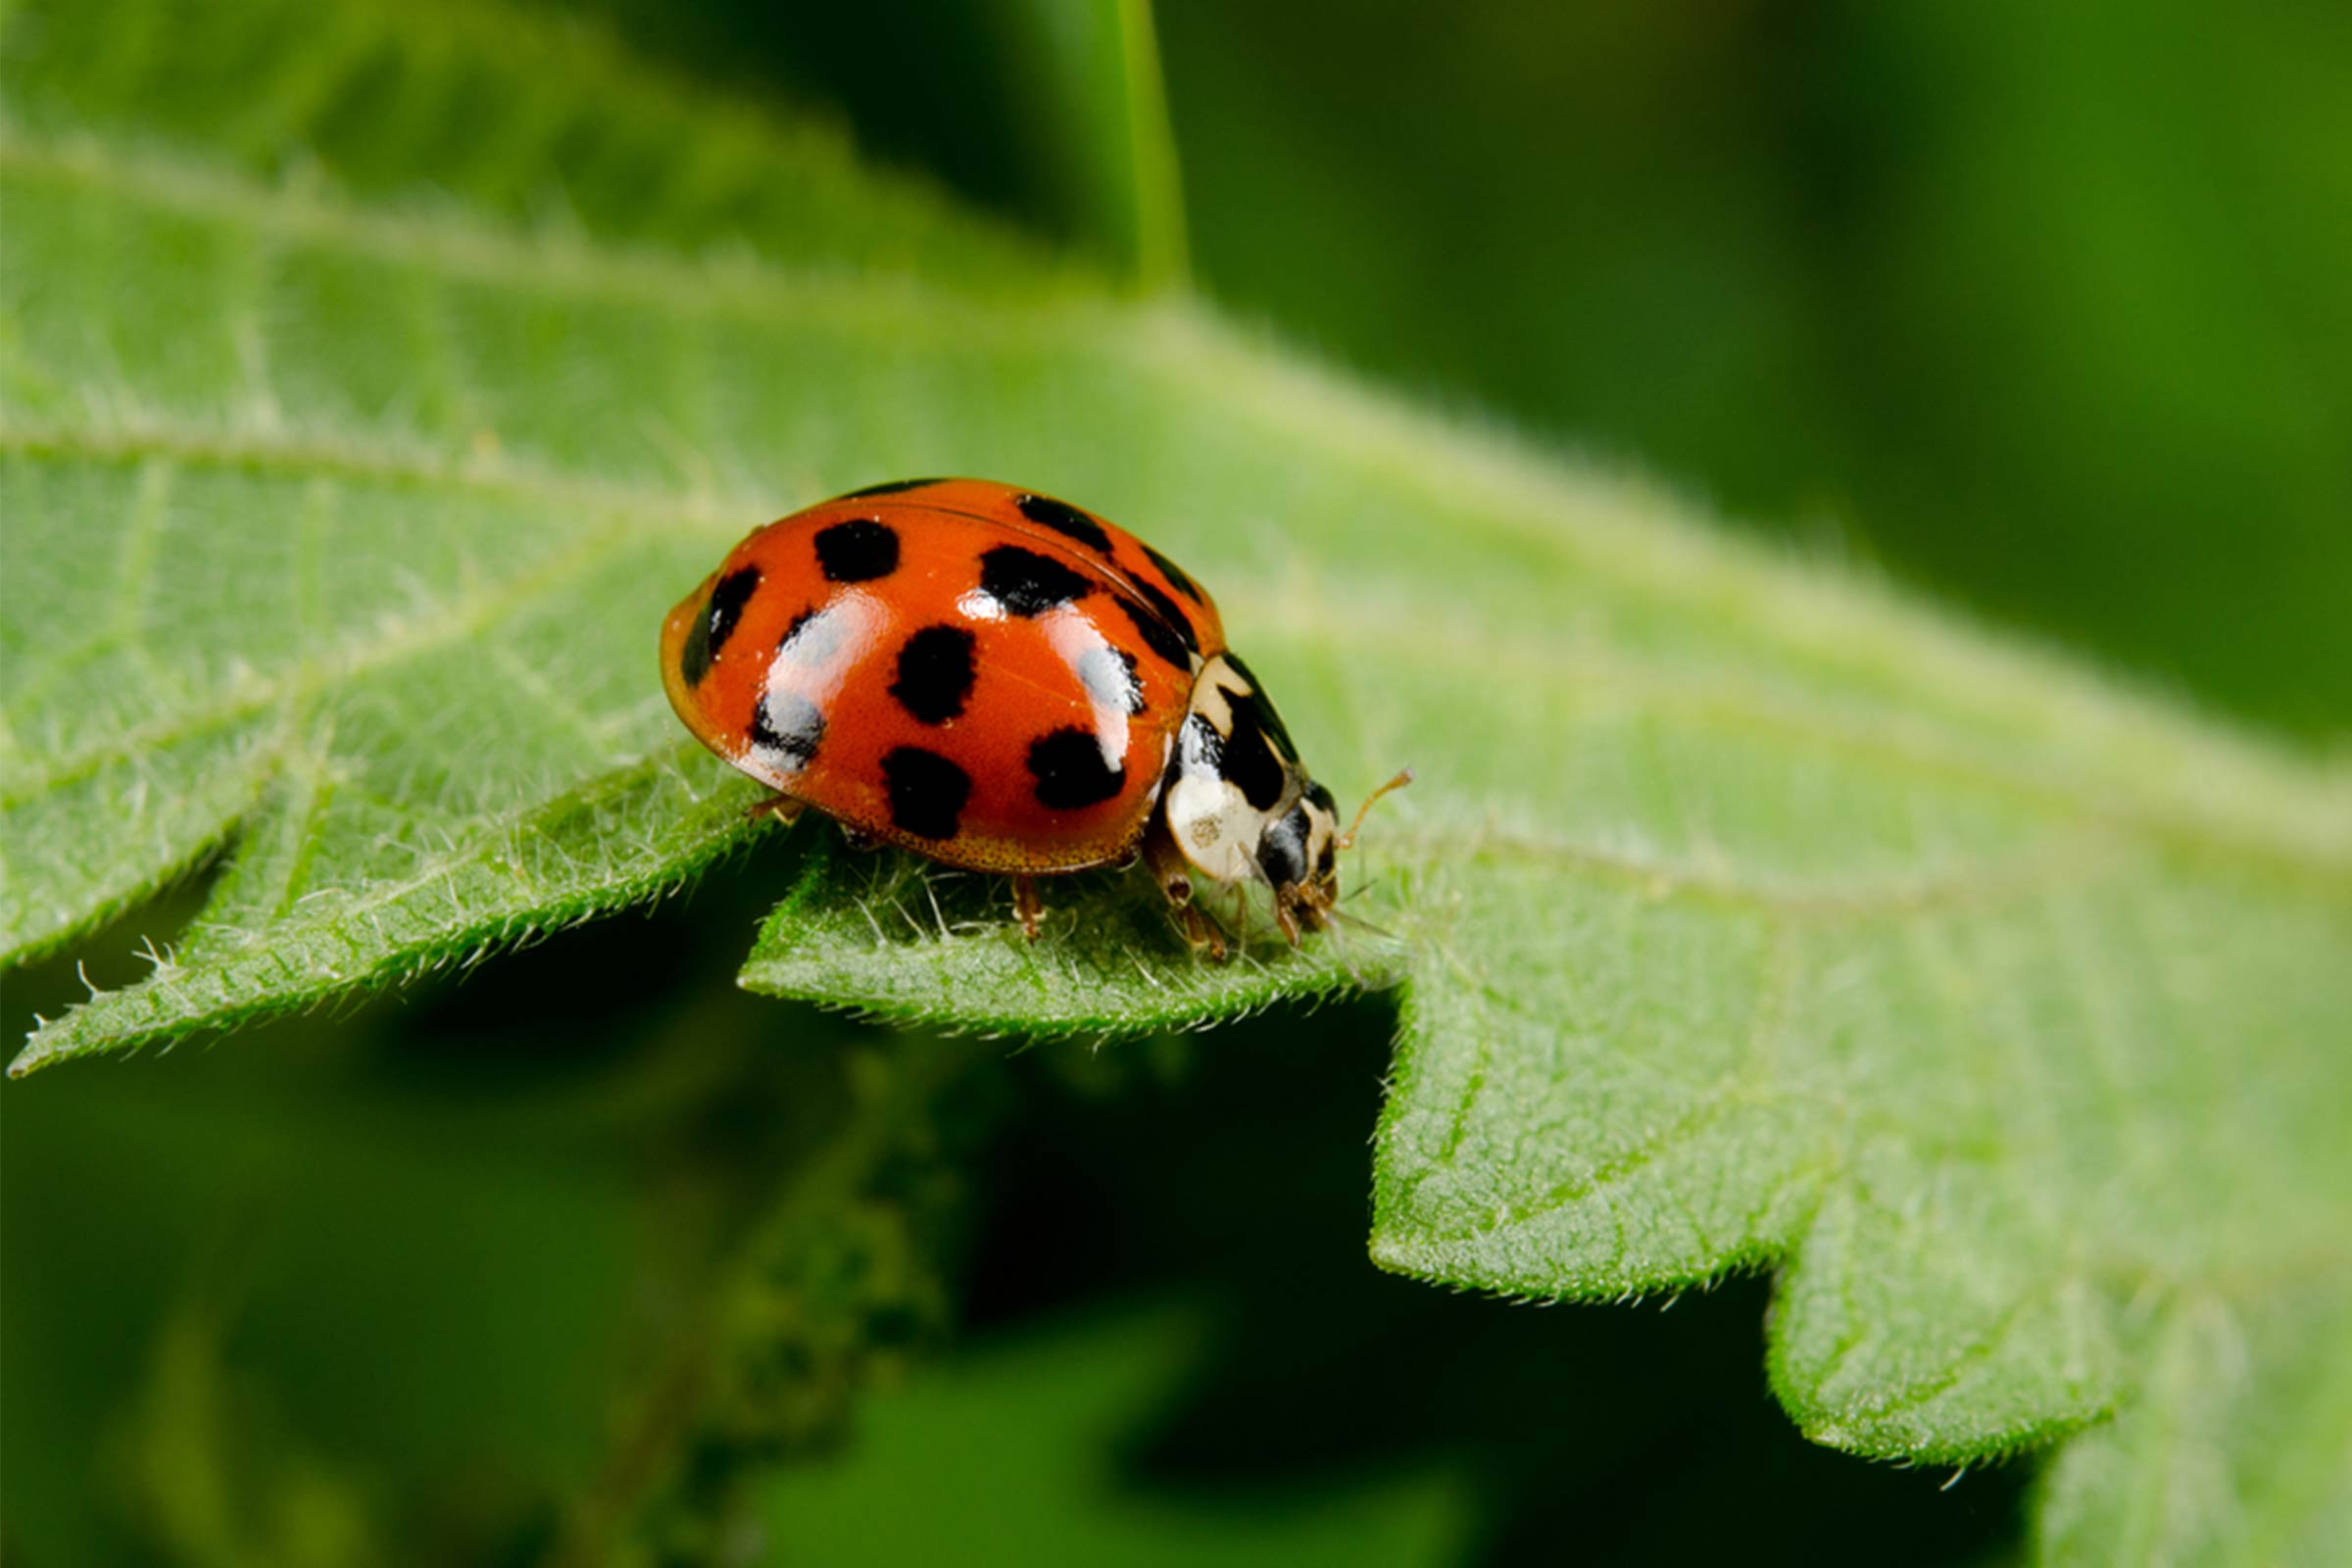 Asian ladybug photo